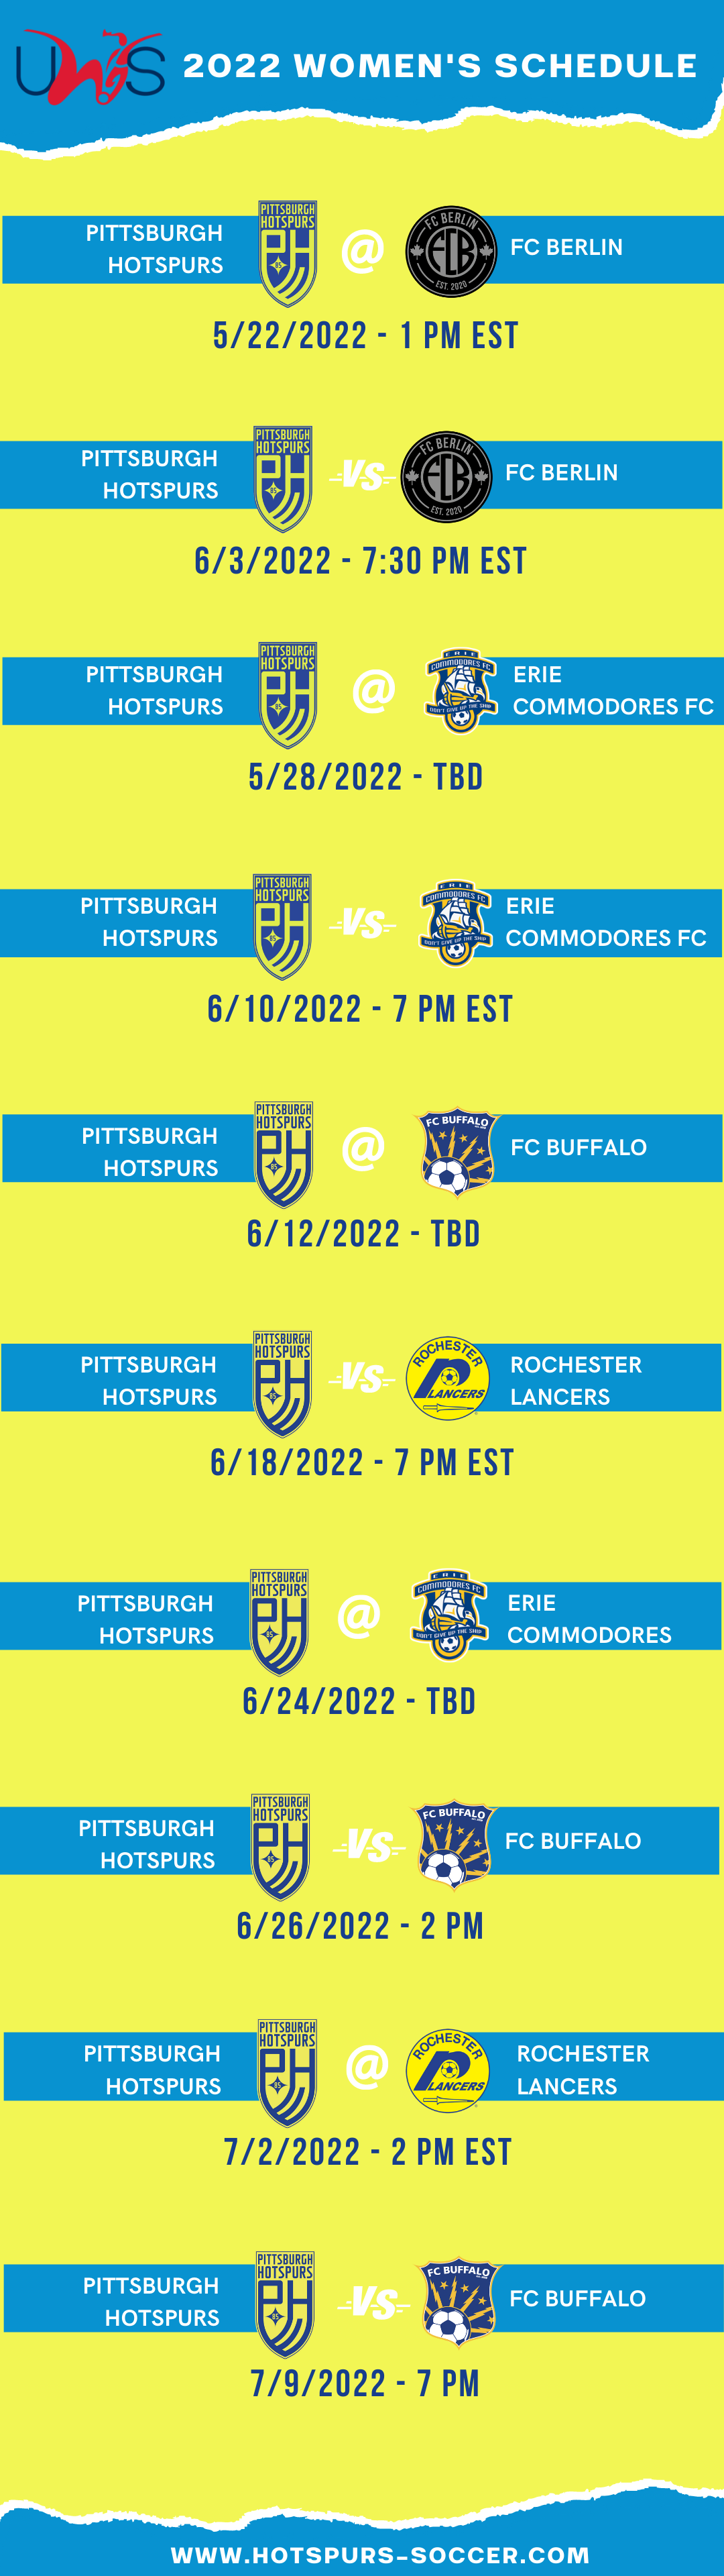 Pittsburgh Hotspurs Women's 2022 Schedule (1)